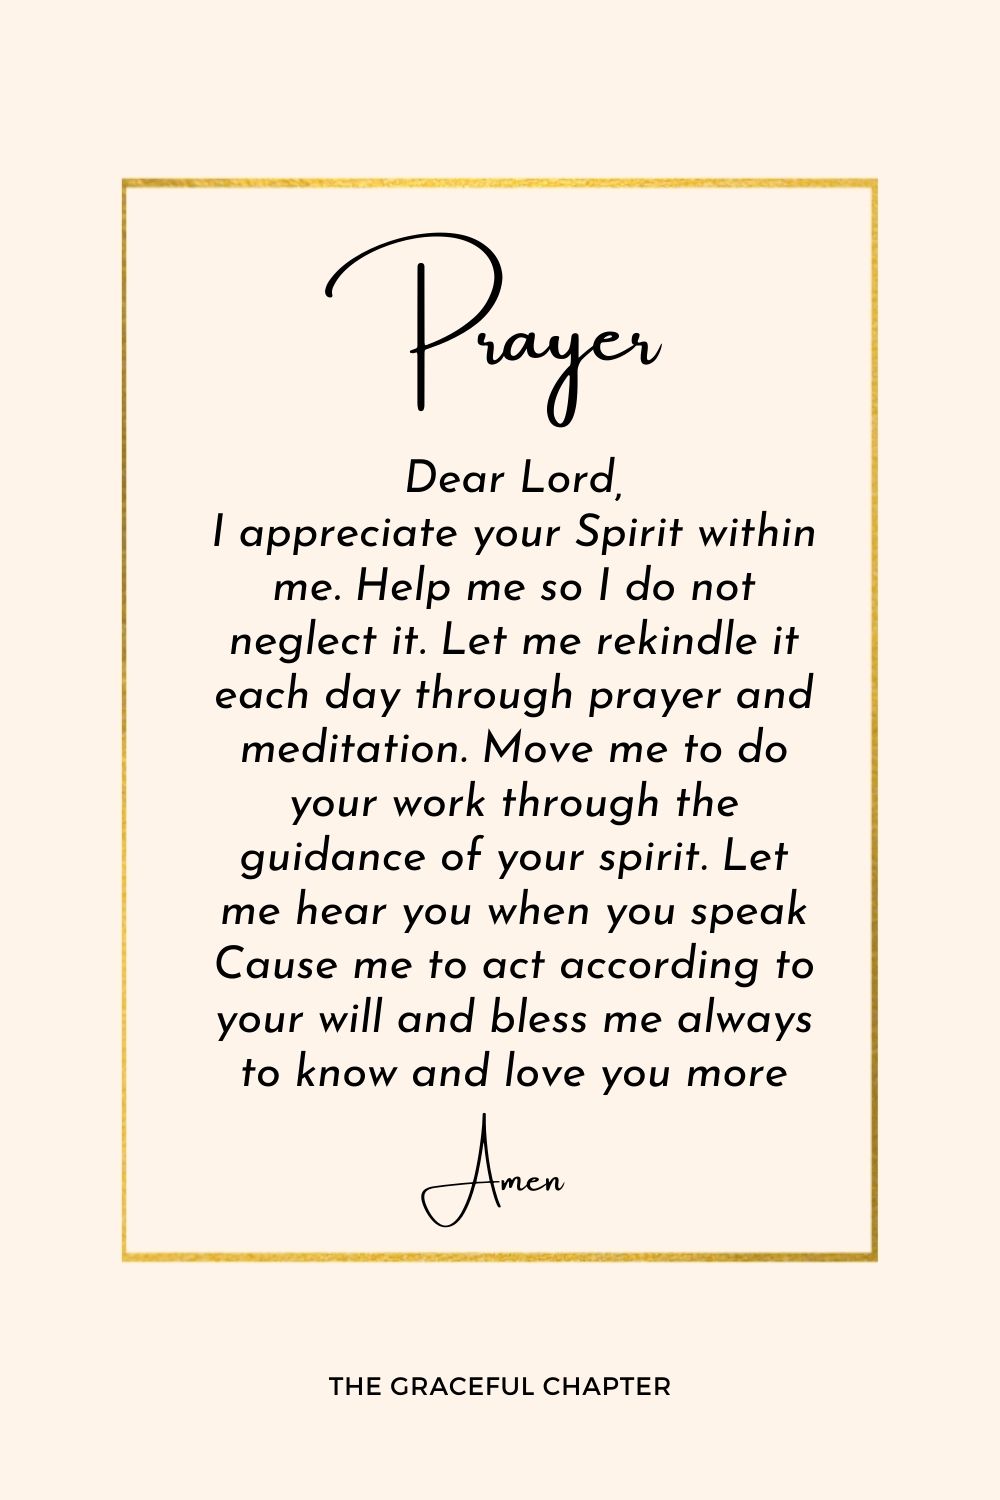 Prayer to listen to the Spirit